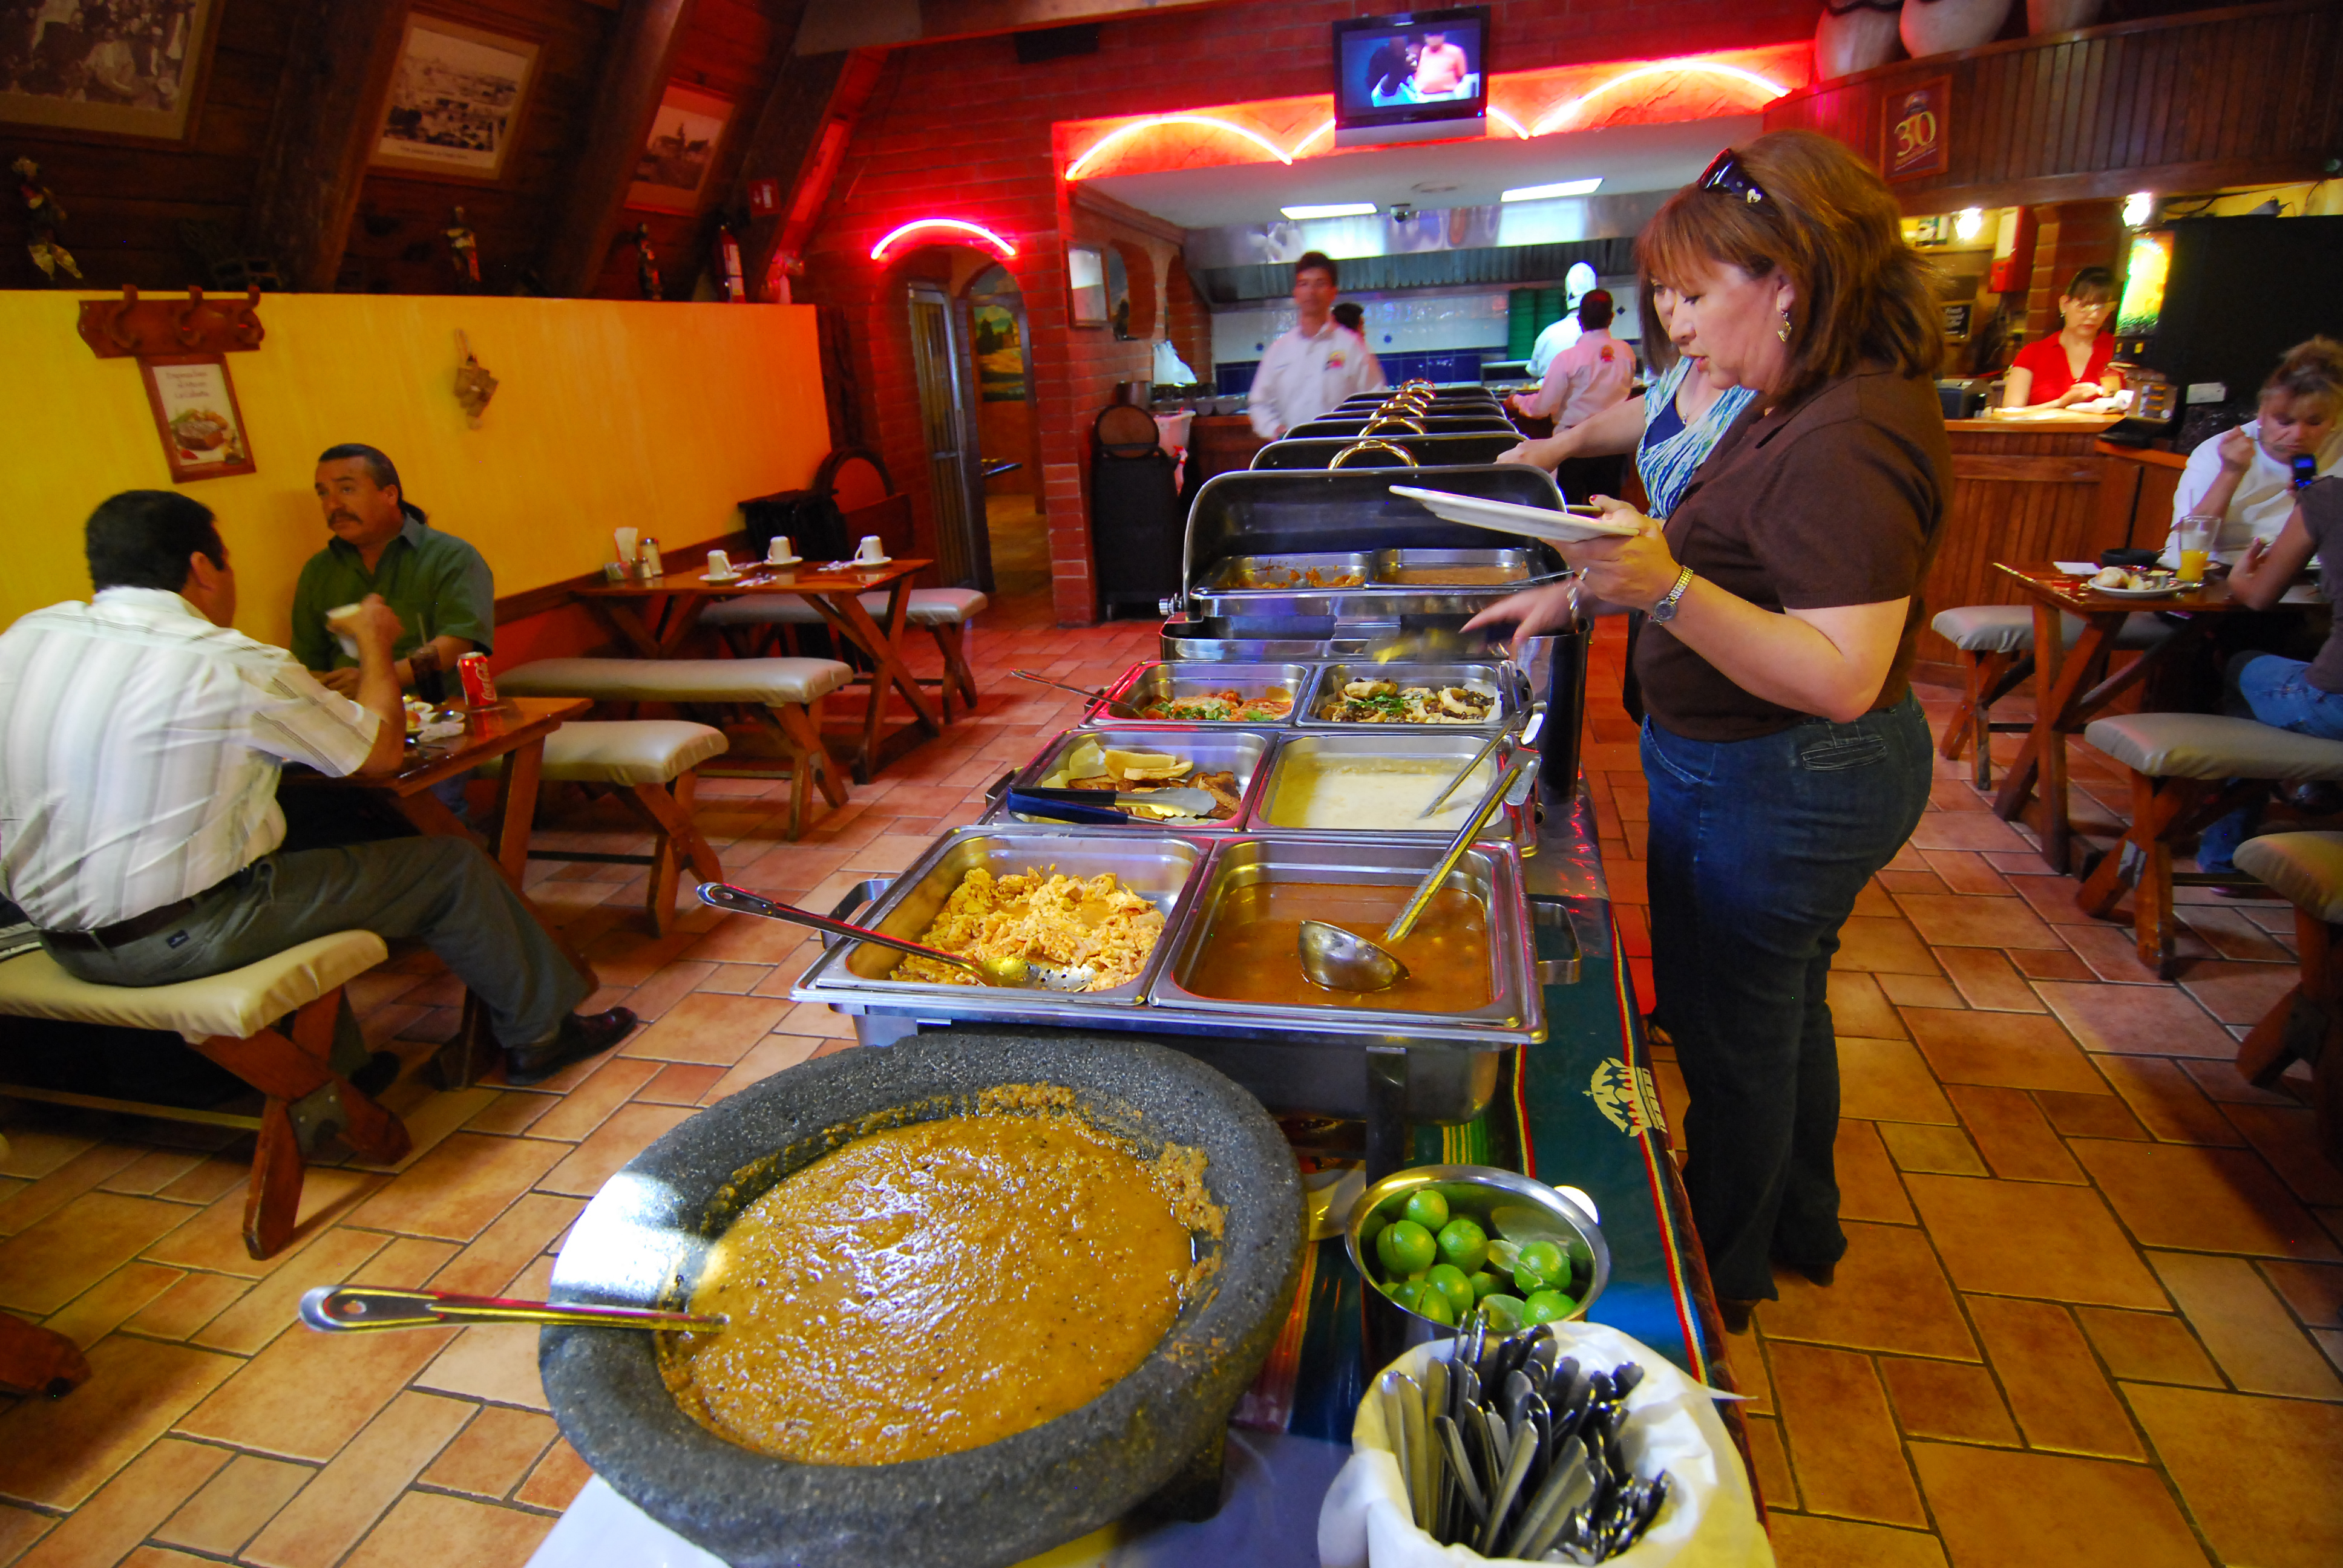 La Cabaña Steak House, 40 años de tradición - Norte de Ciudad Juárez